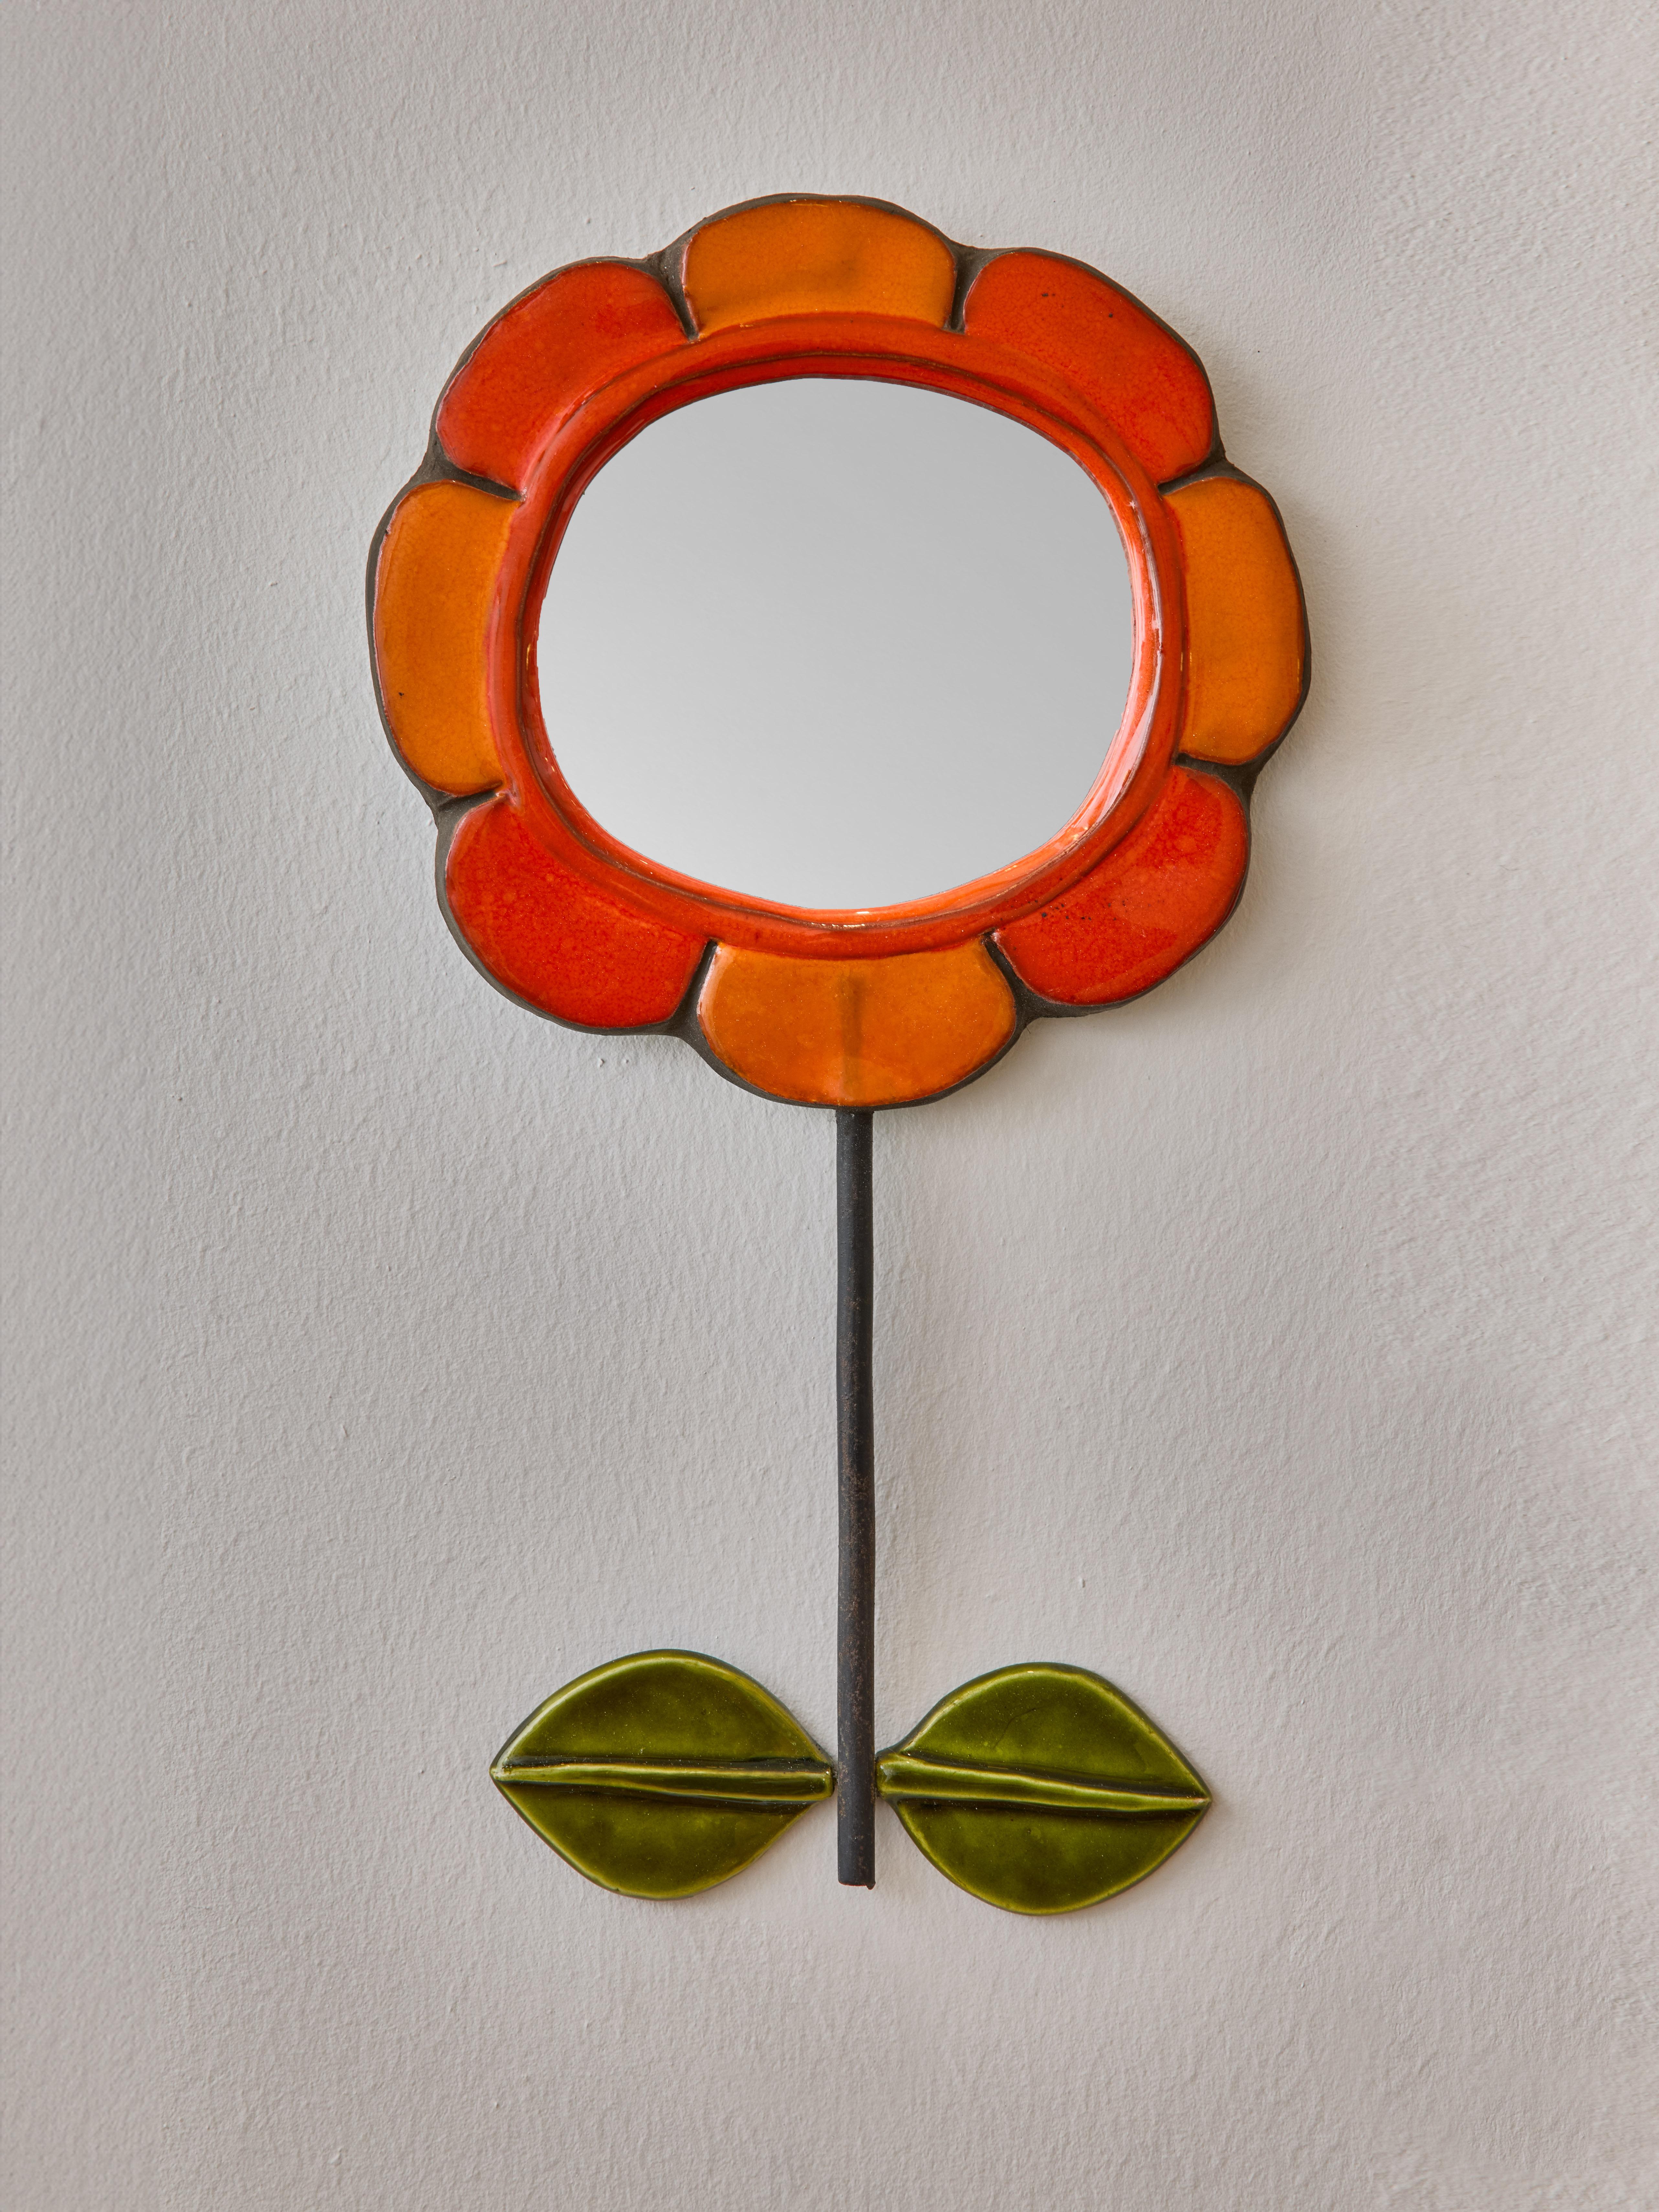 Miroir en céramique en forme de fleur avec des pétales orange. Tige verticale en métal sur laquelle sont fixées deux feuilles en céramique de couleur verte. Réalisé par Mithé Espelt.

 

Marie Thérèse Espelt, alias Mithé Espelt (1923-2020)

 

Née à